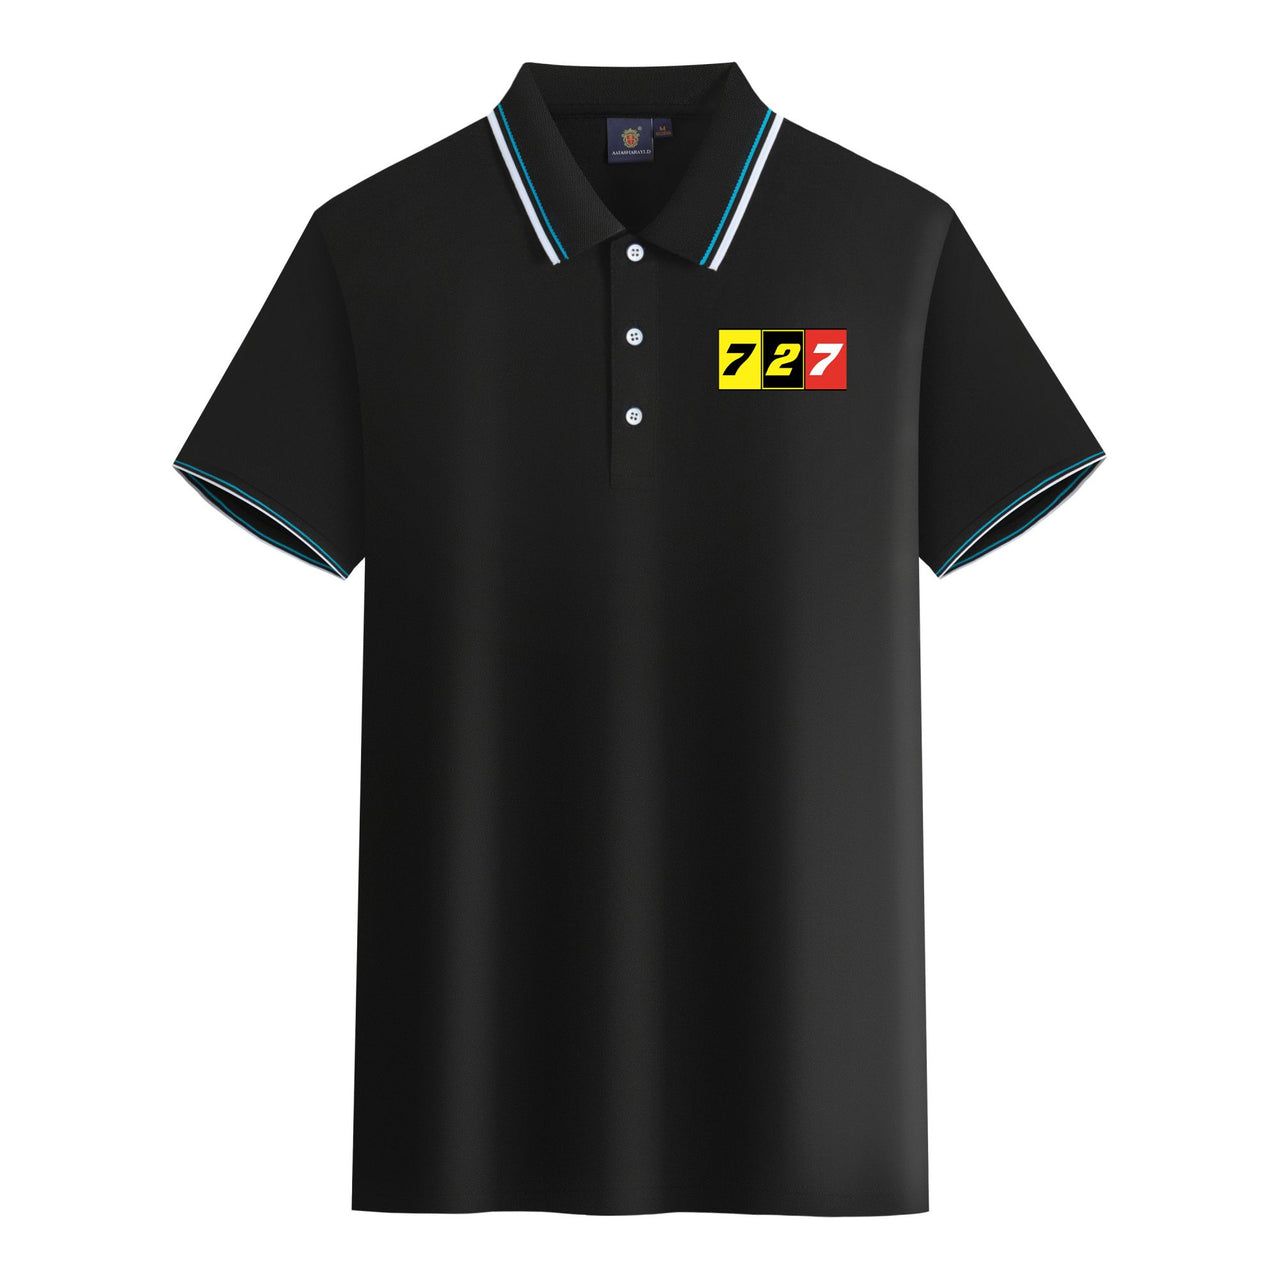 Flat Colourful 727 Designed Stylish Polo T-Shirts